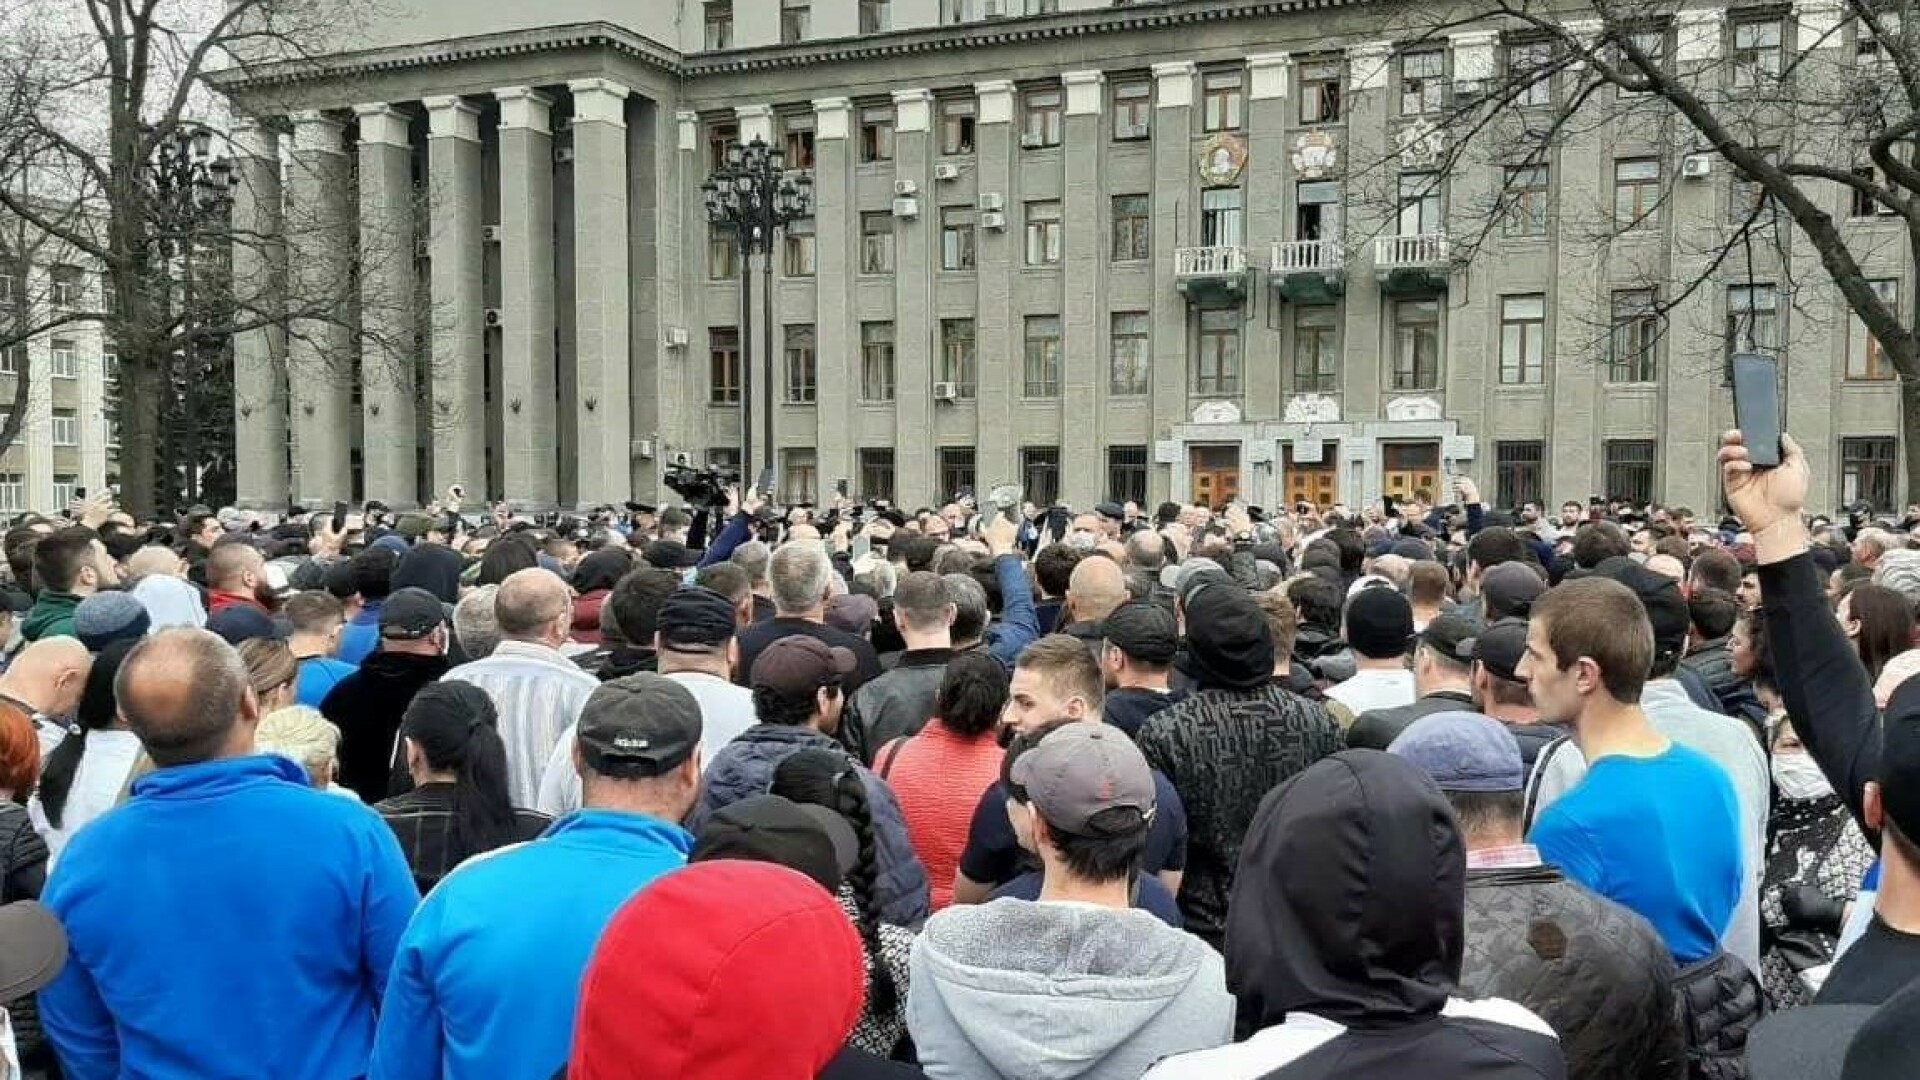 protest rusia